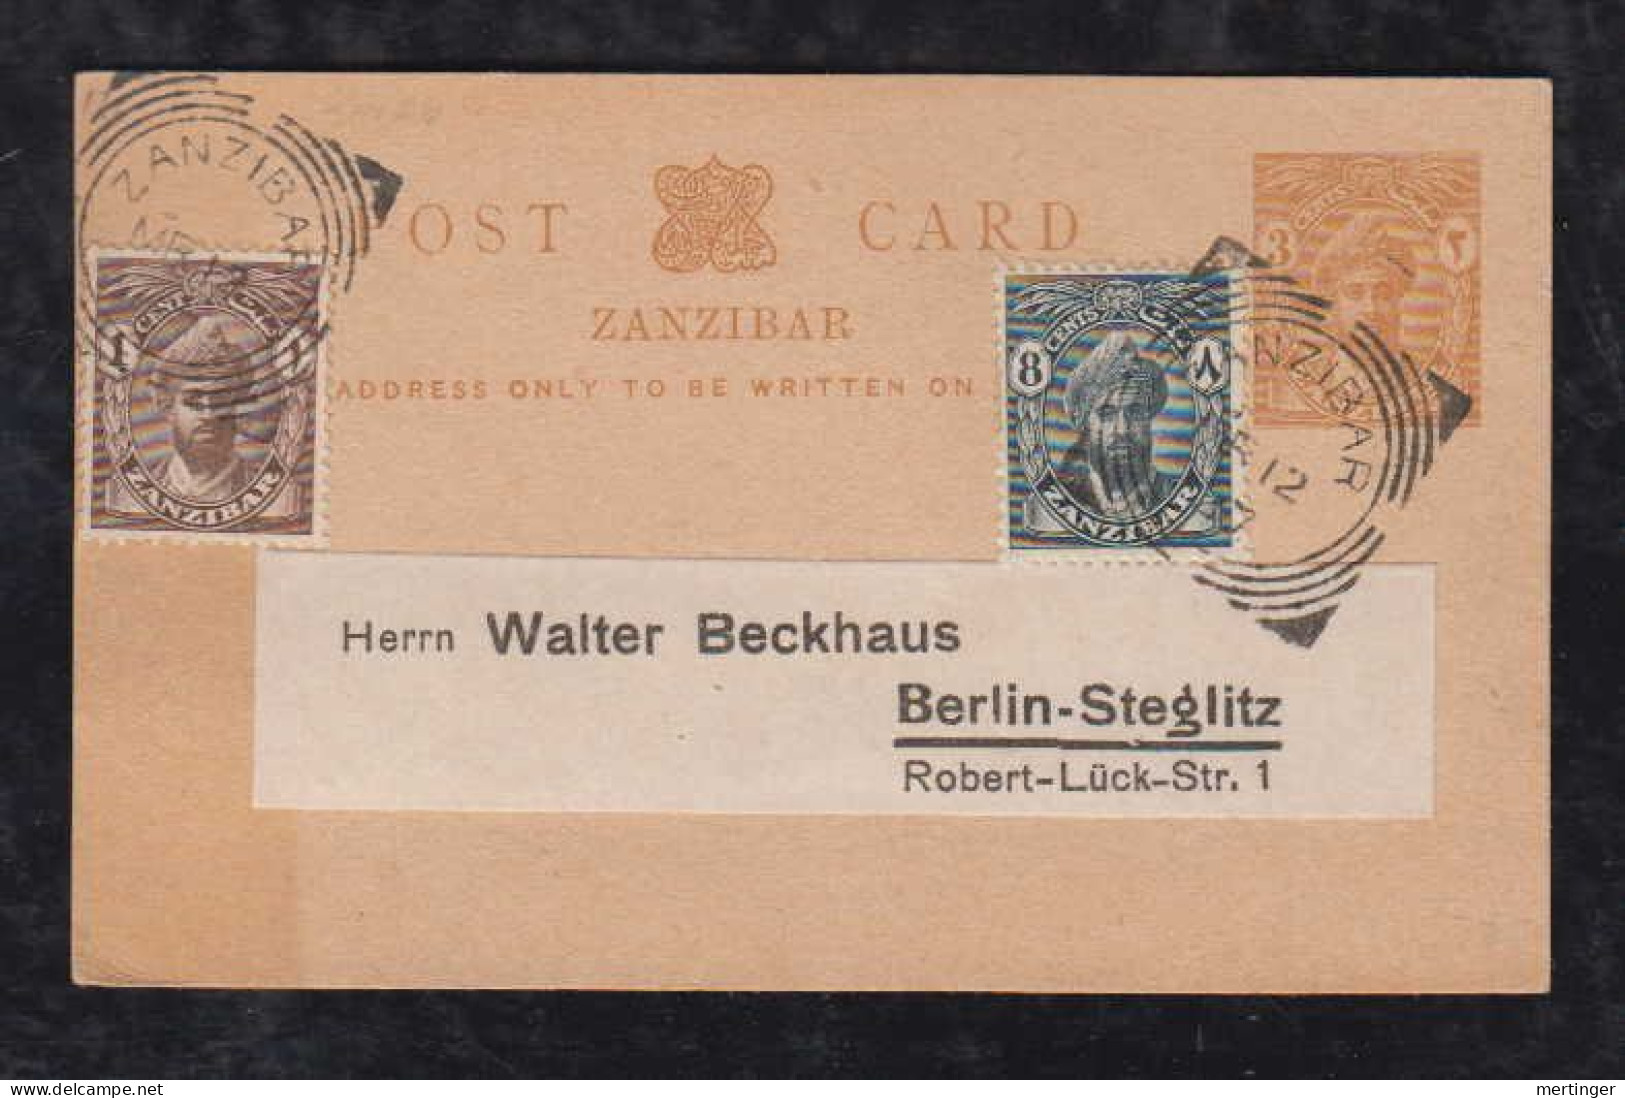 Zanzibar 1927 Uprated Stationery Postcard 3c To BERLIN Germany - Zanzibar (...-1963)